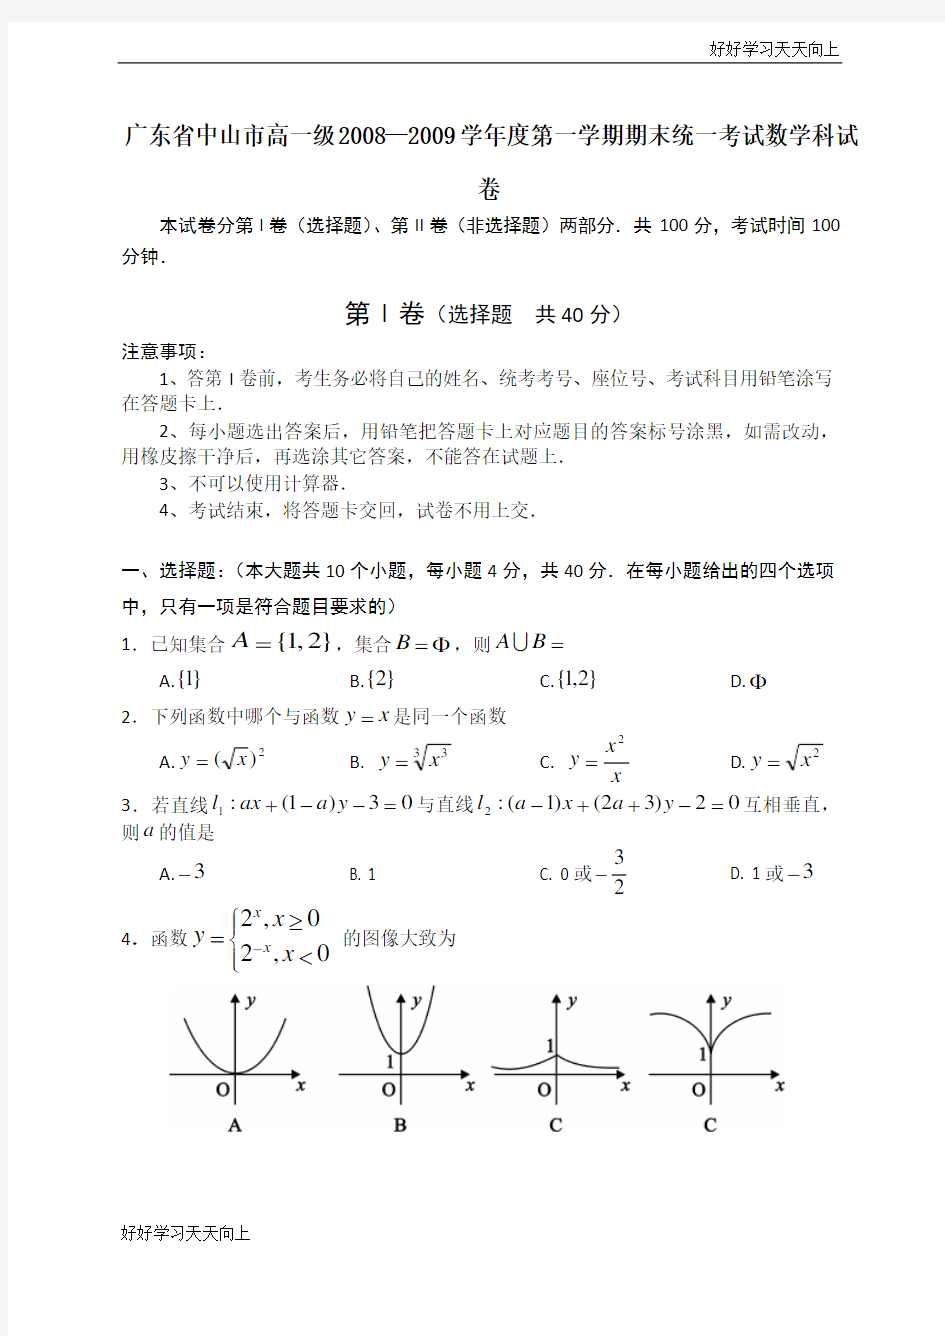 广东省中山市高一级学年度第一学期期末统一考试数学科试卷